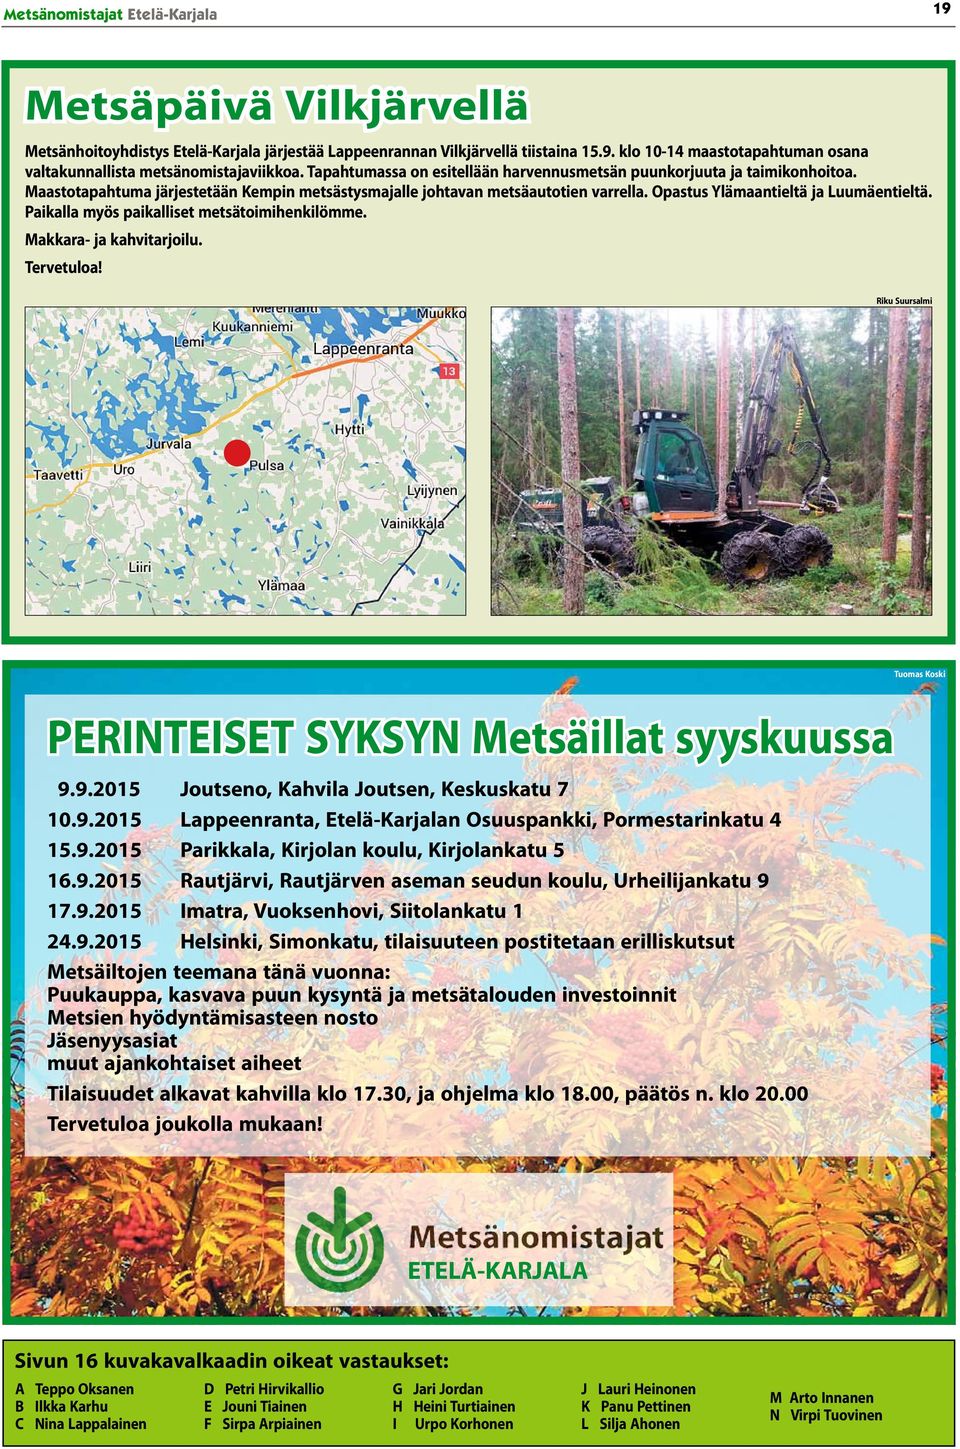 Paikalla myös paikalliset metsätoimihenkilömme. Makkara- ja kahvitarjoilu. Tervetuloa! Riku Suursalmi Tuomas Koski PERINTEISET SYKSYN Metsäillat syyskuussa 9.